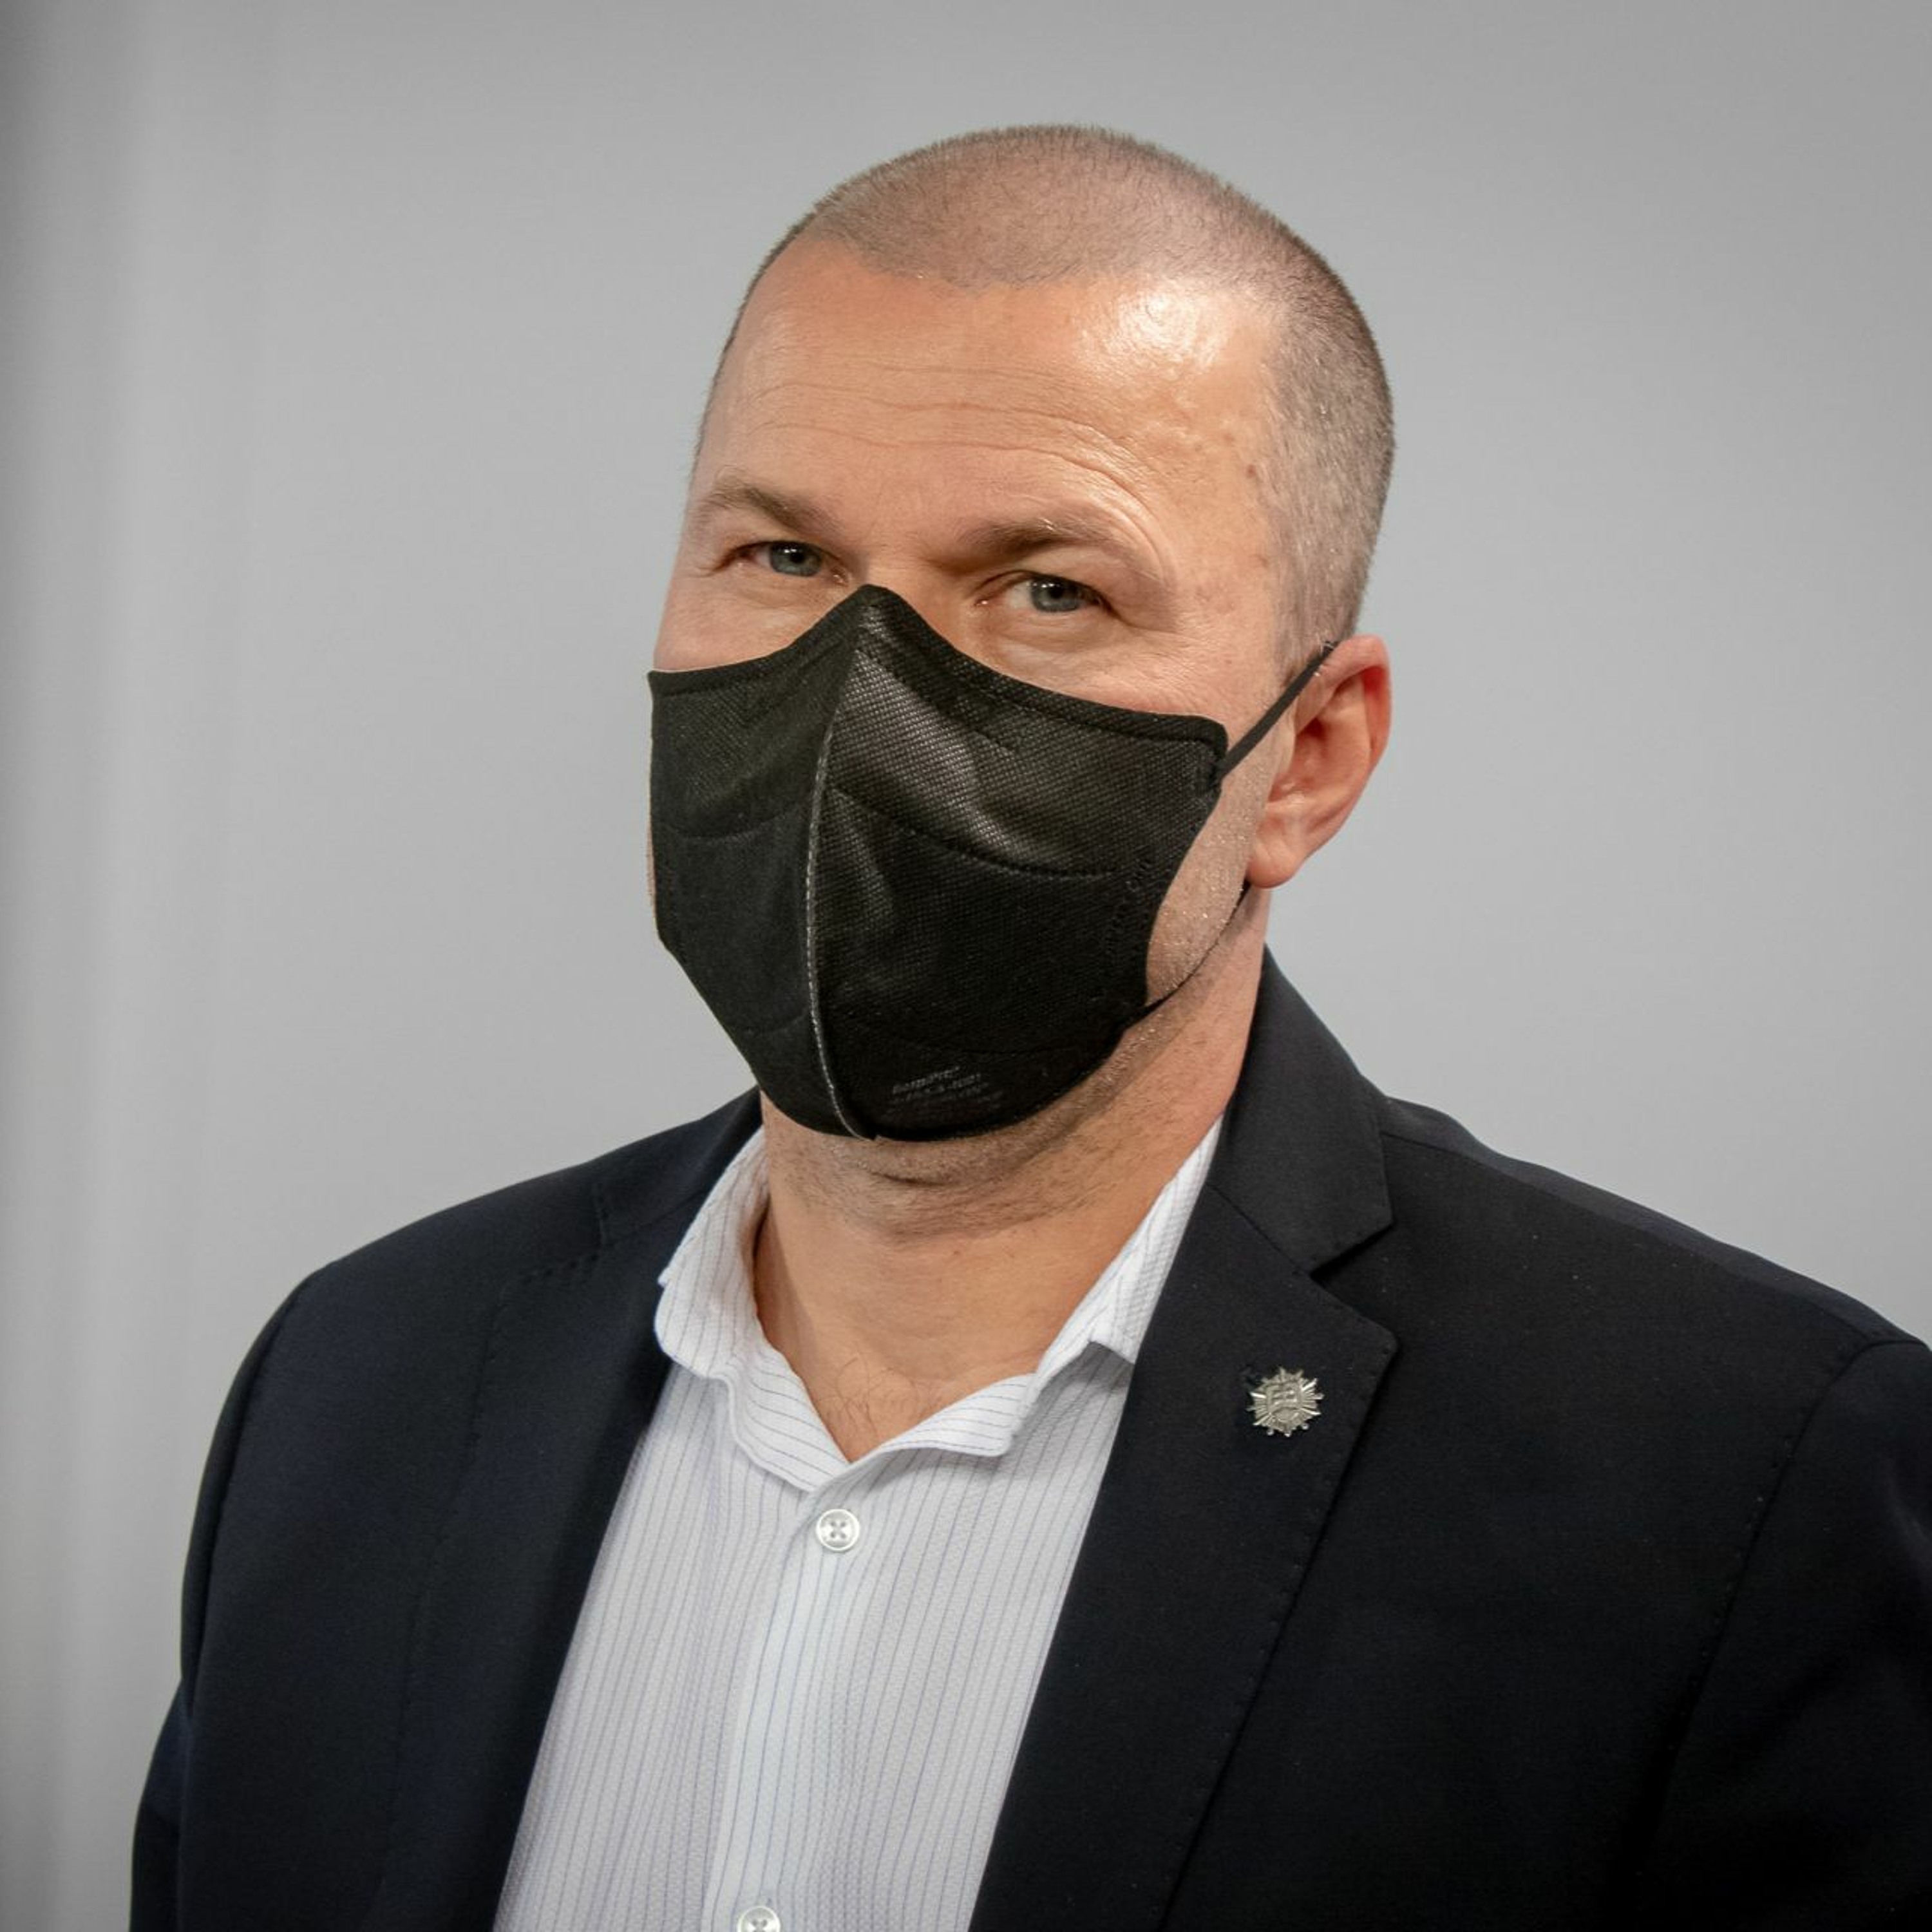 Policajný šéf Peter Kovařík: Netrasiem sa za funkciou, som statočný človek